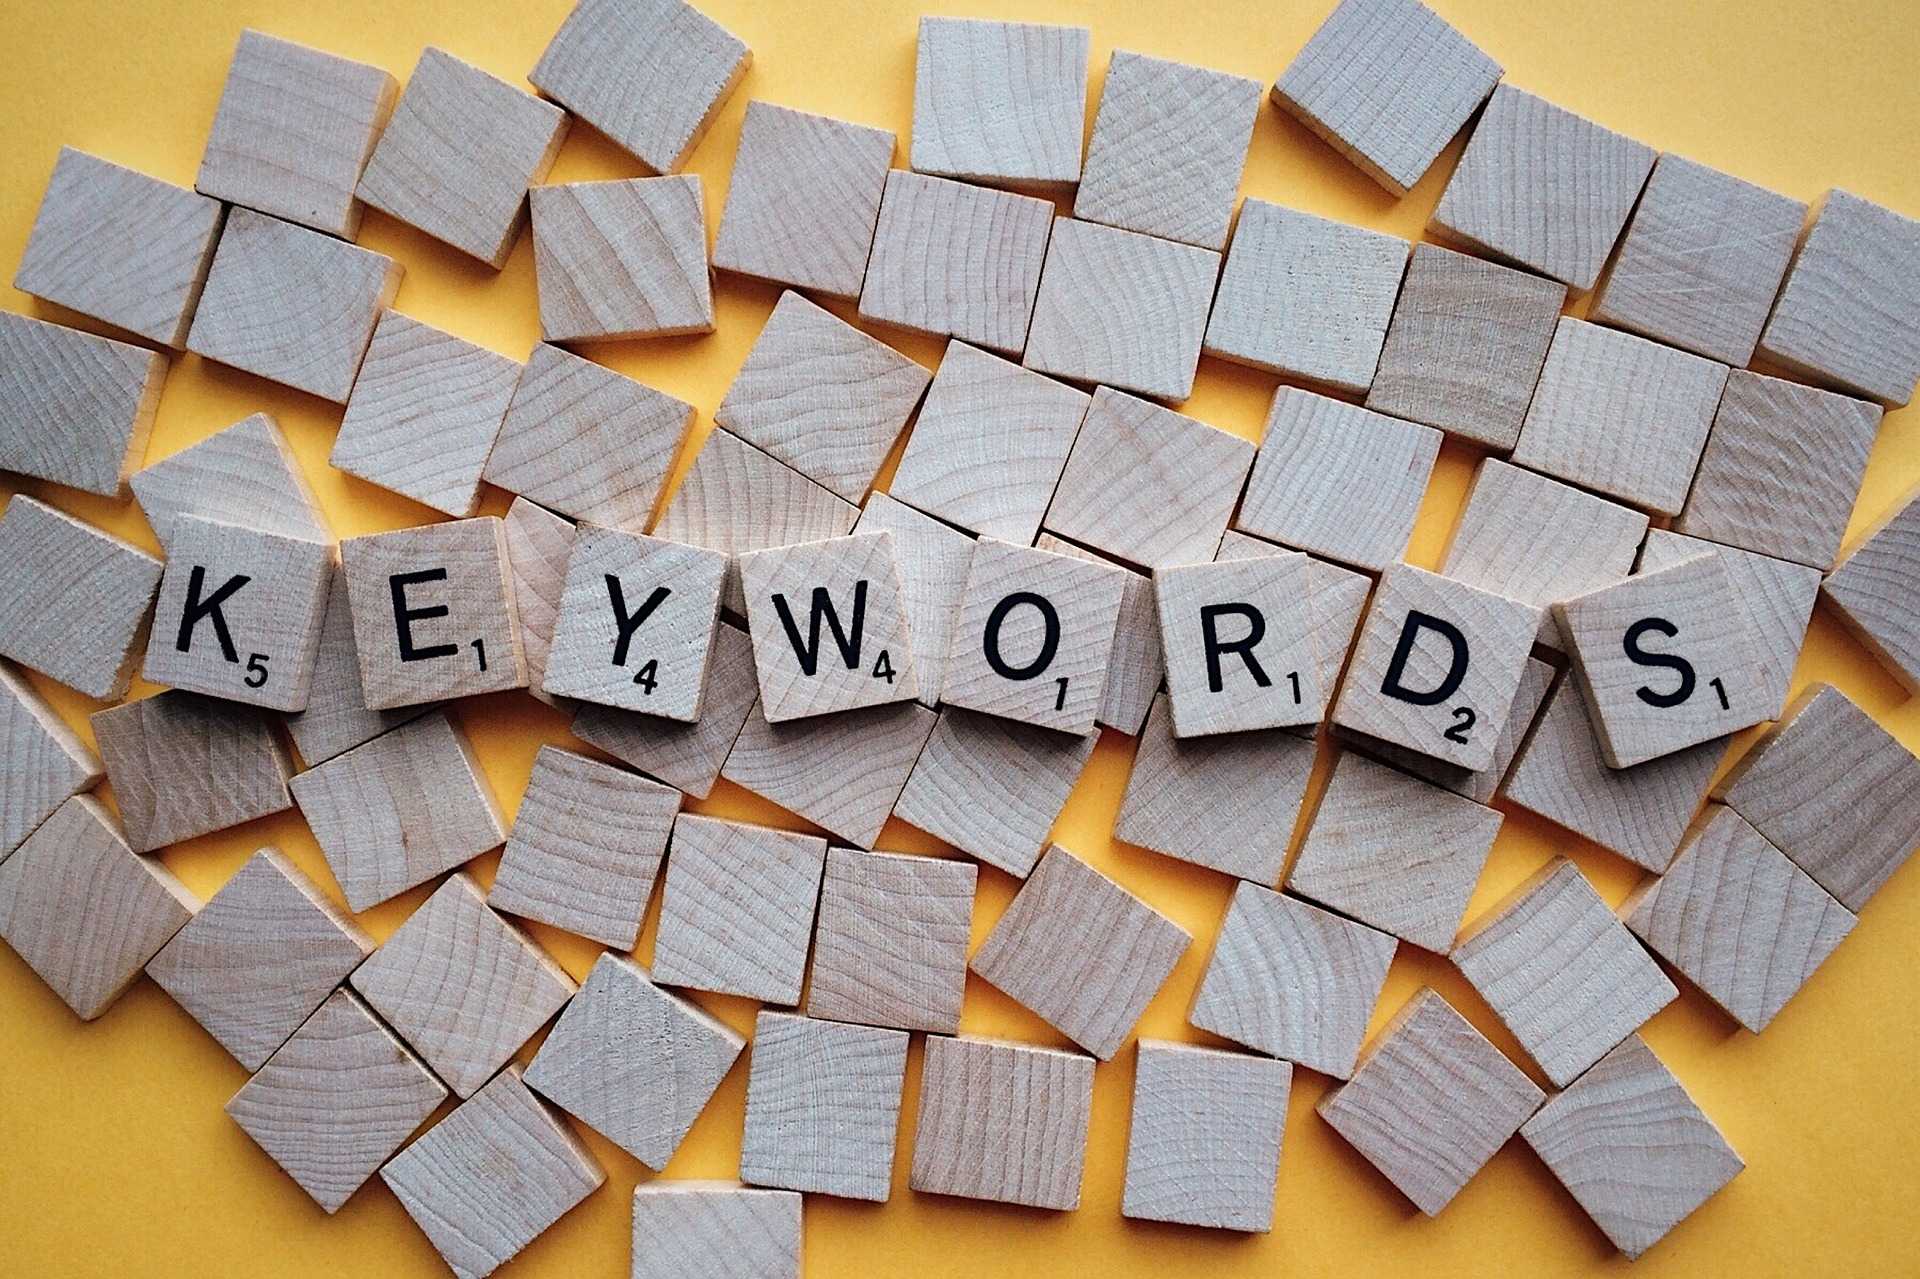 Thuật ngữ tiếng Anh Keyword có nghĩa là một hoặc nhiều từ mà người dùng viết vào công cụ tìm kiếm để tìm và tham khảo các trang web mà họ quan tâm